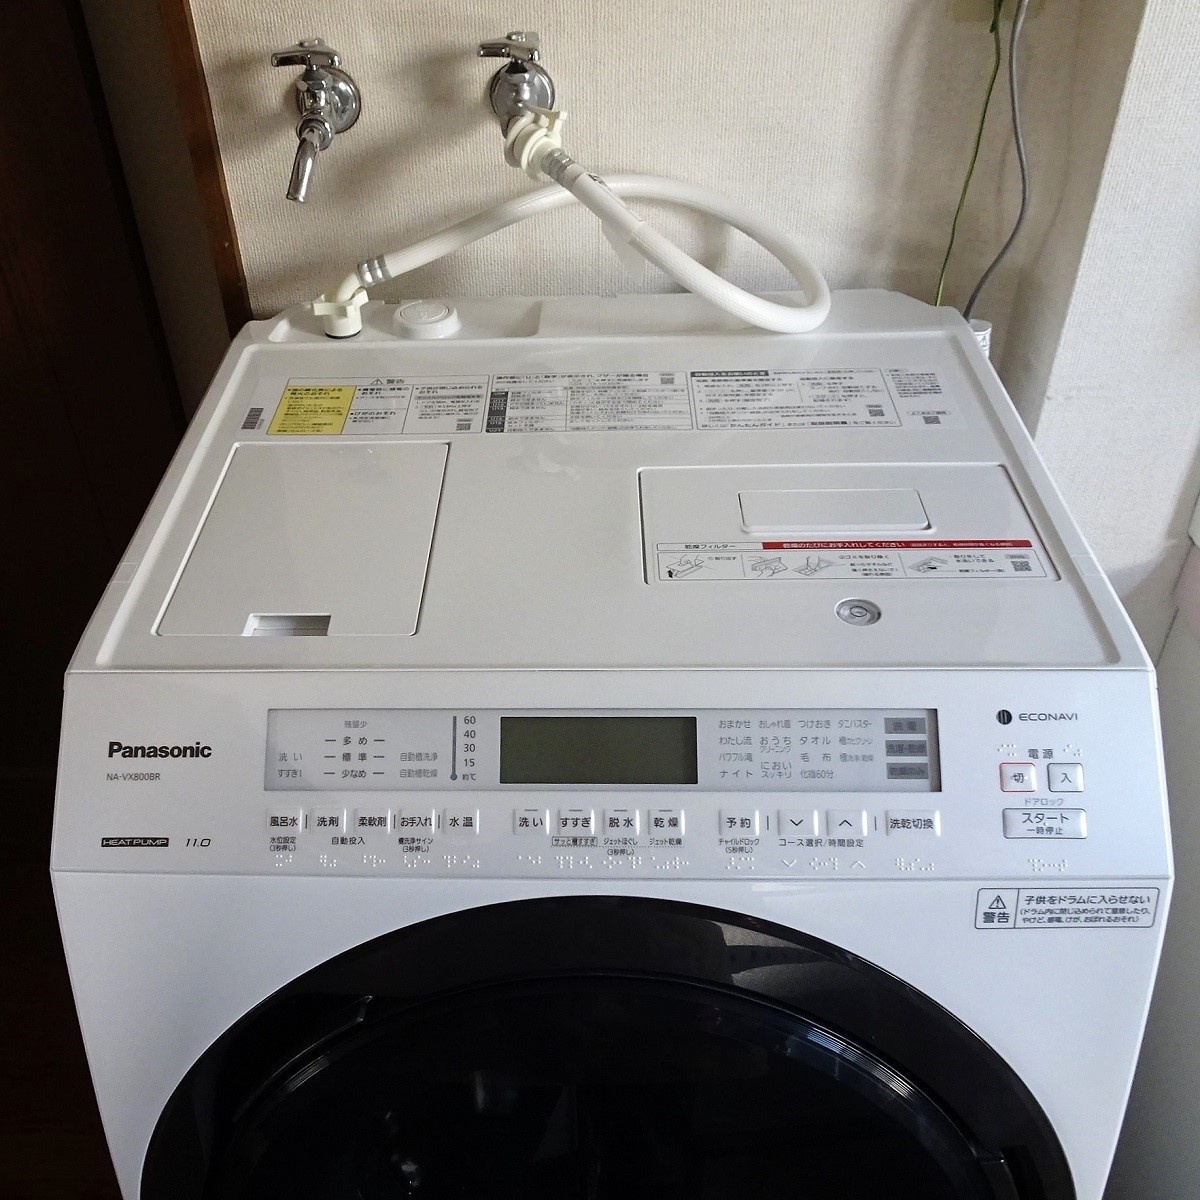 8200円 人気の贈り物が大集合 洗濯機の部品 TCL洗濯機メインボード交換用洗濯機ディスプレイコントロールボードXQB60-315 XQB60-316と互換性があります ホームアプライアンススペアパーツ